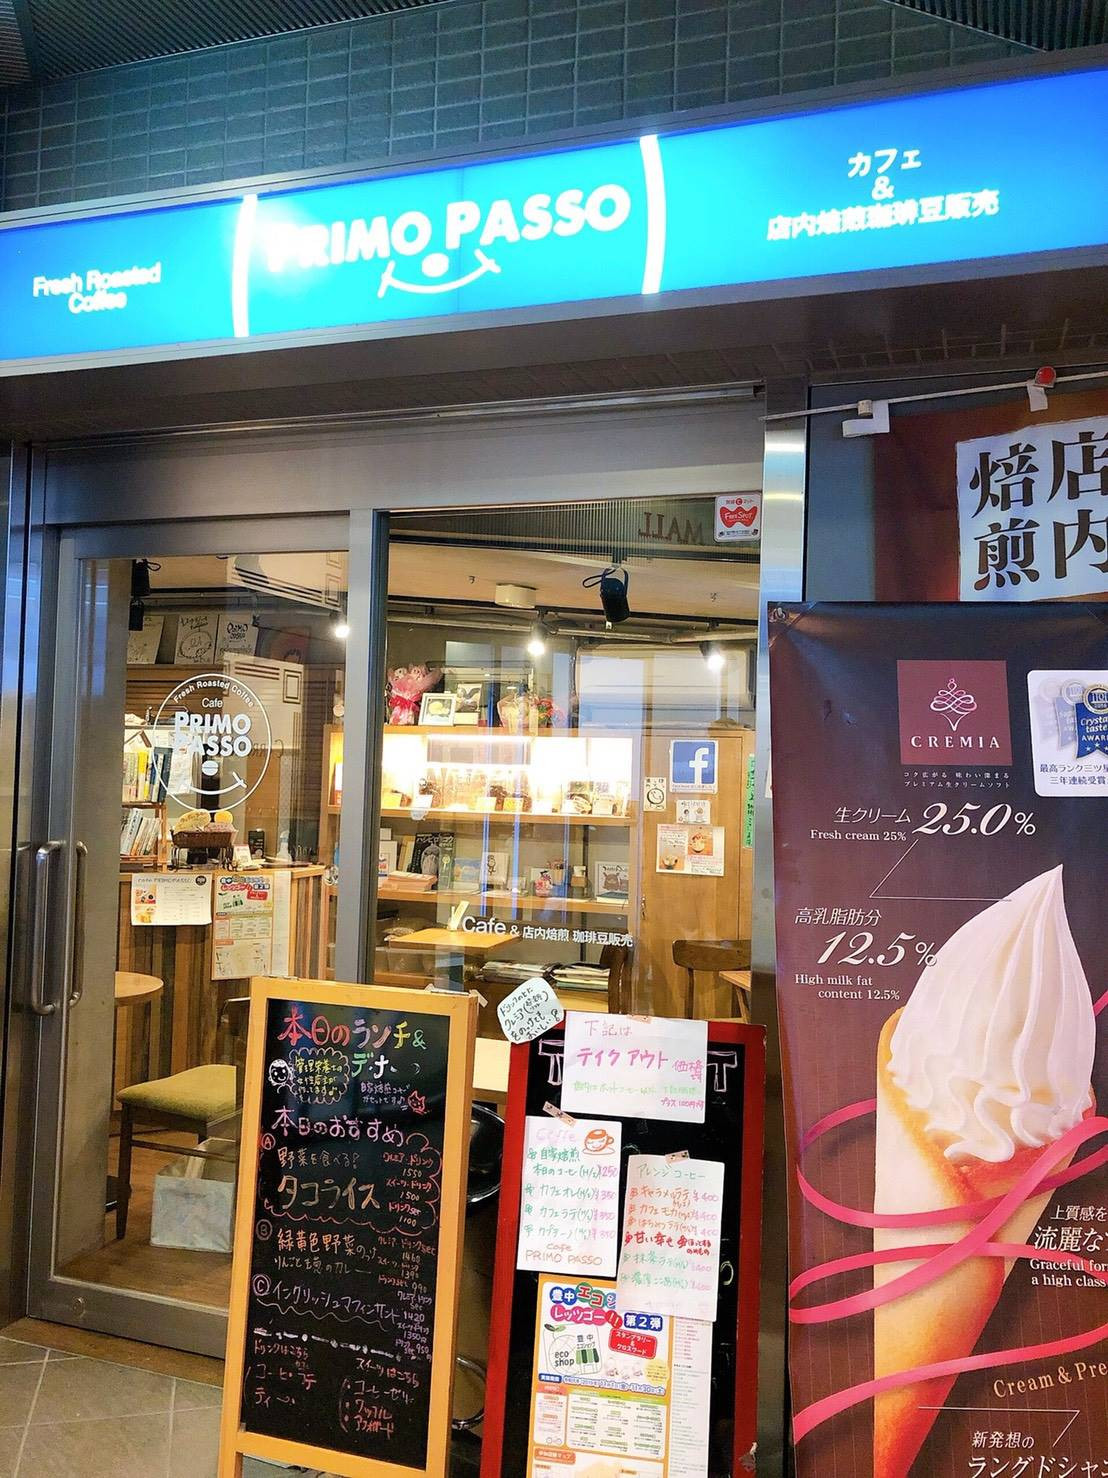 Cafe PRIMO PASSO